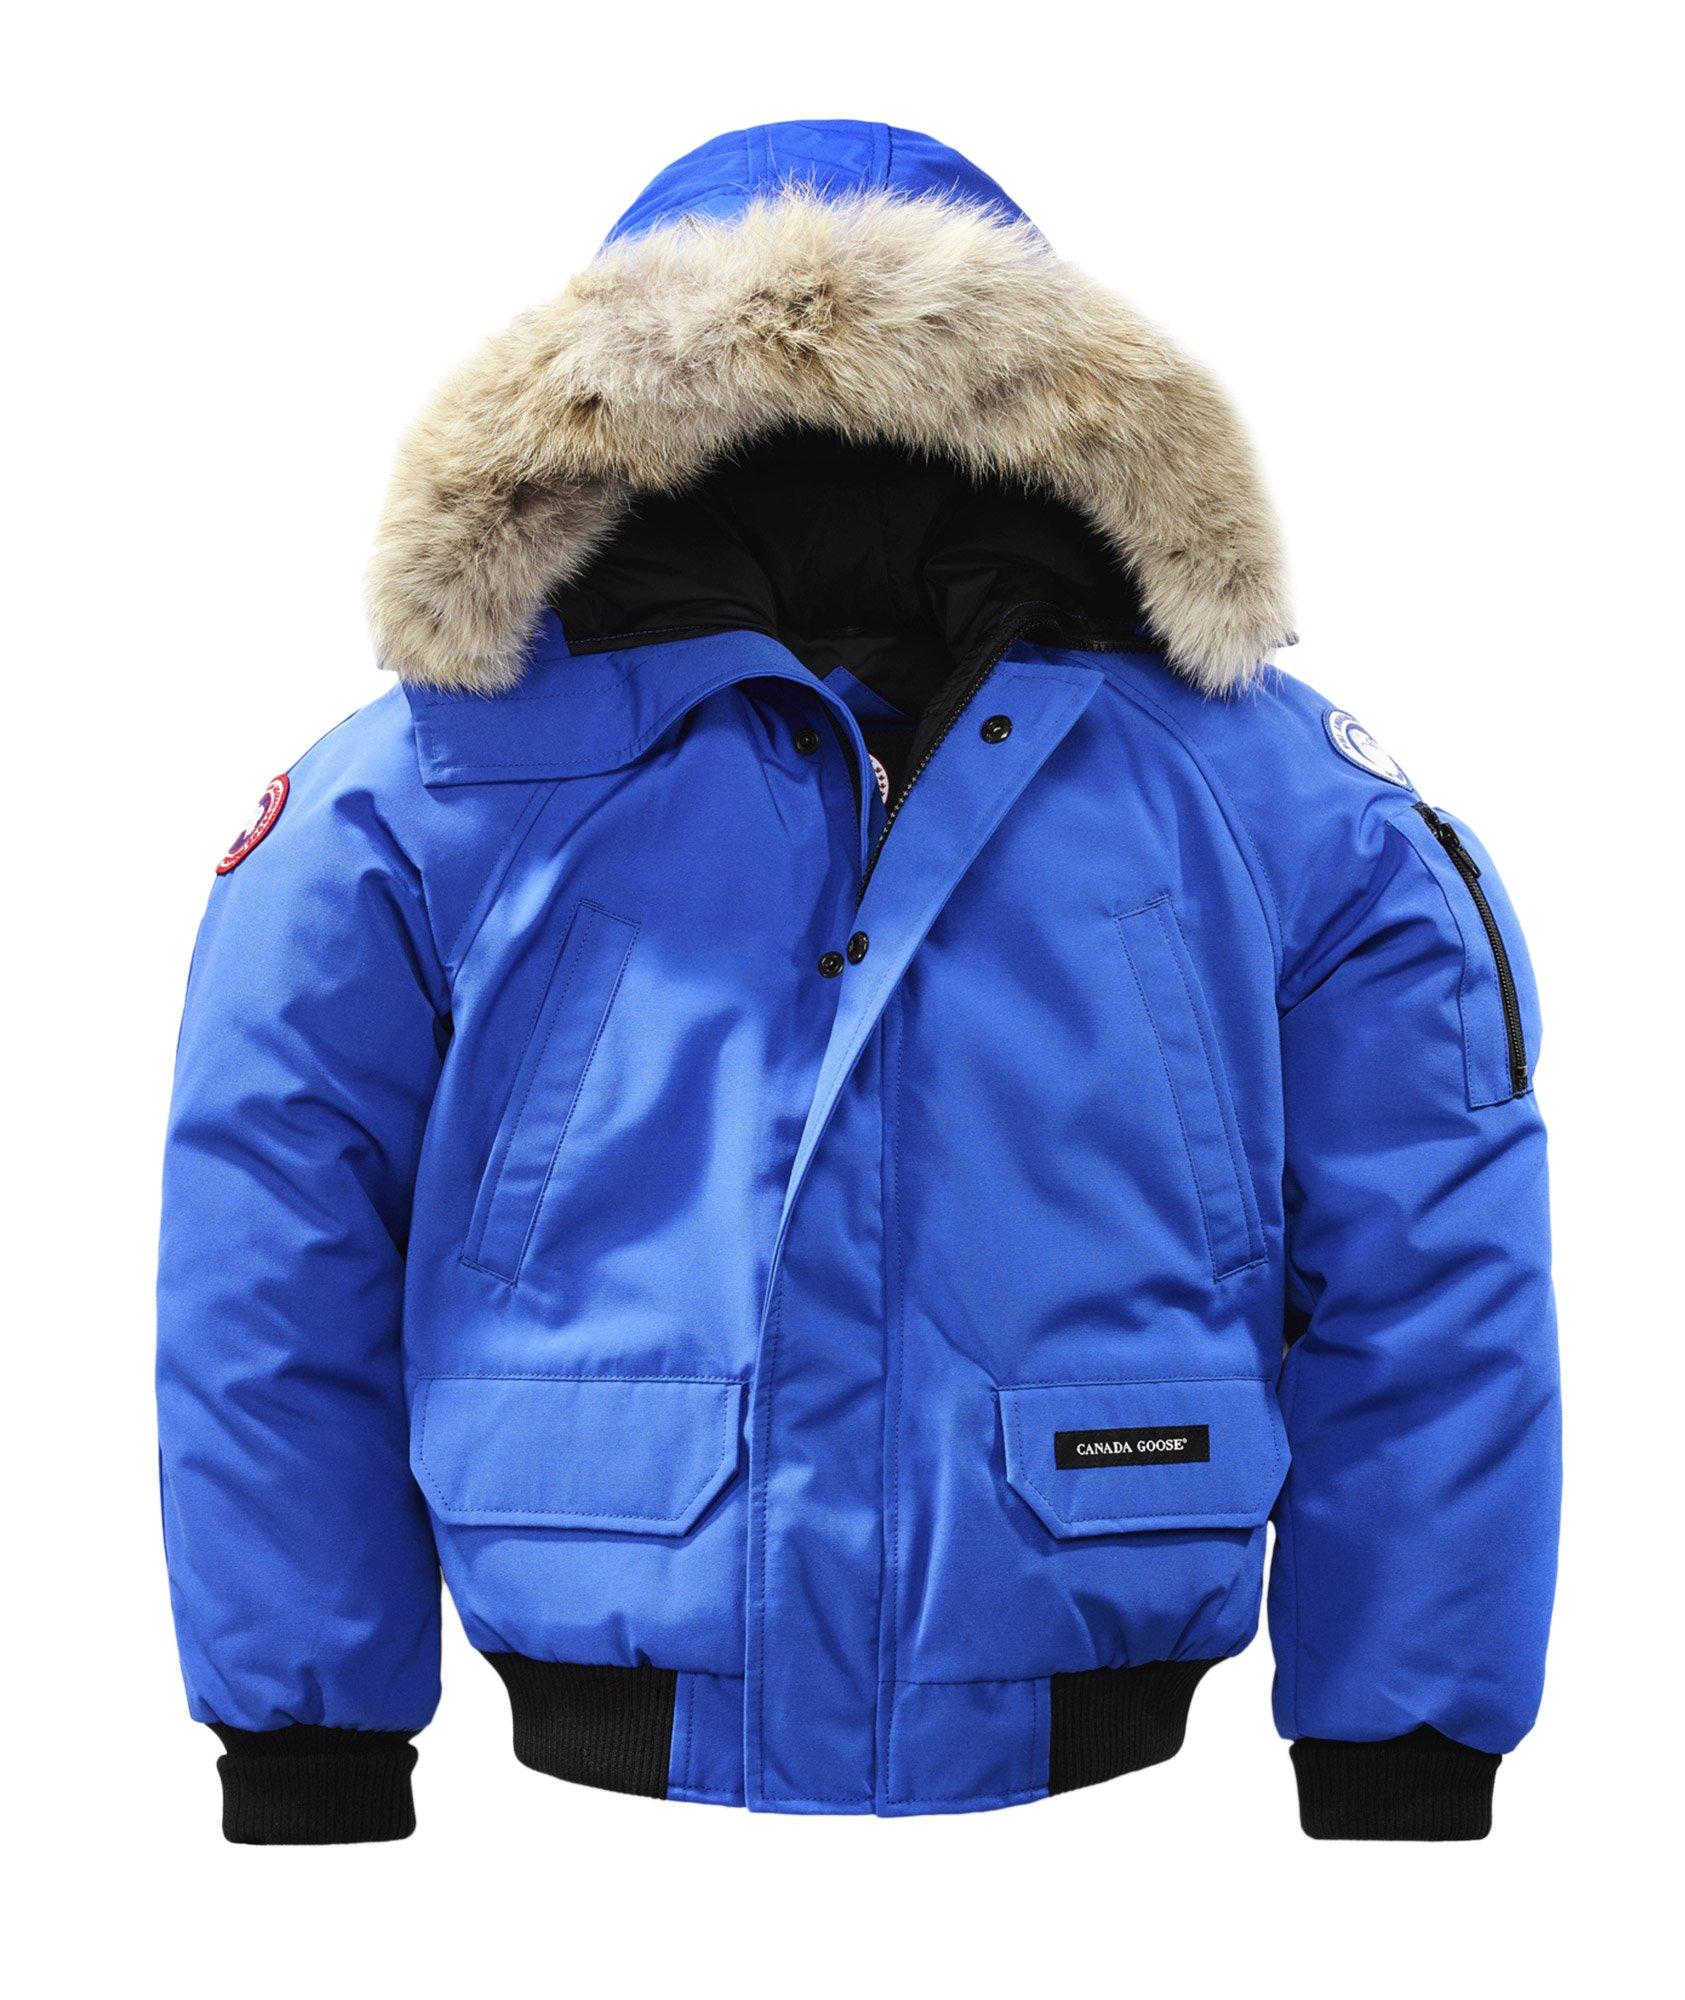 Le manteau Chilliwack pour jeunes, collection PBI image 0